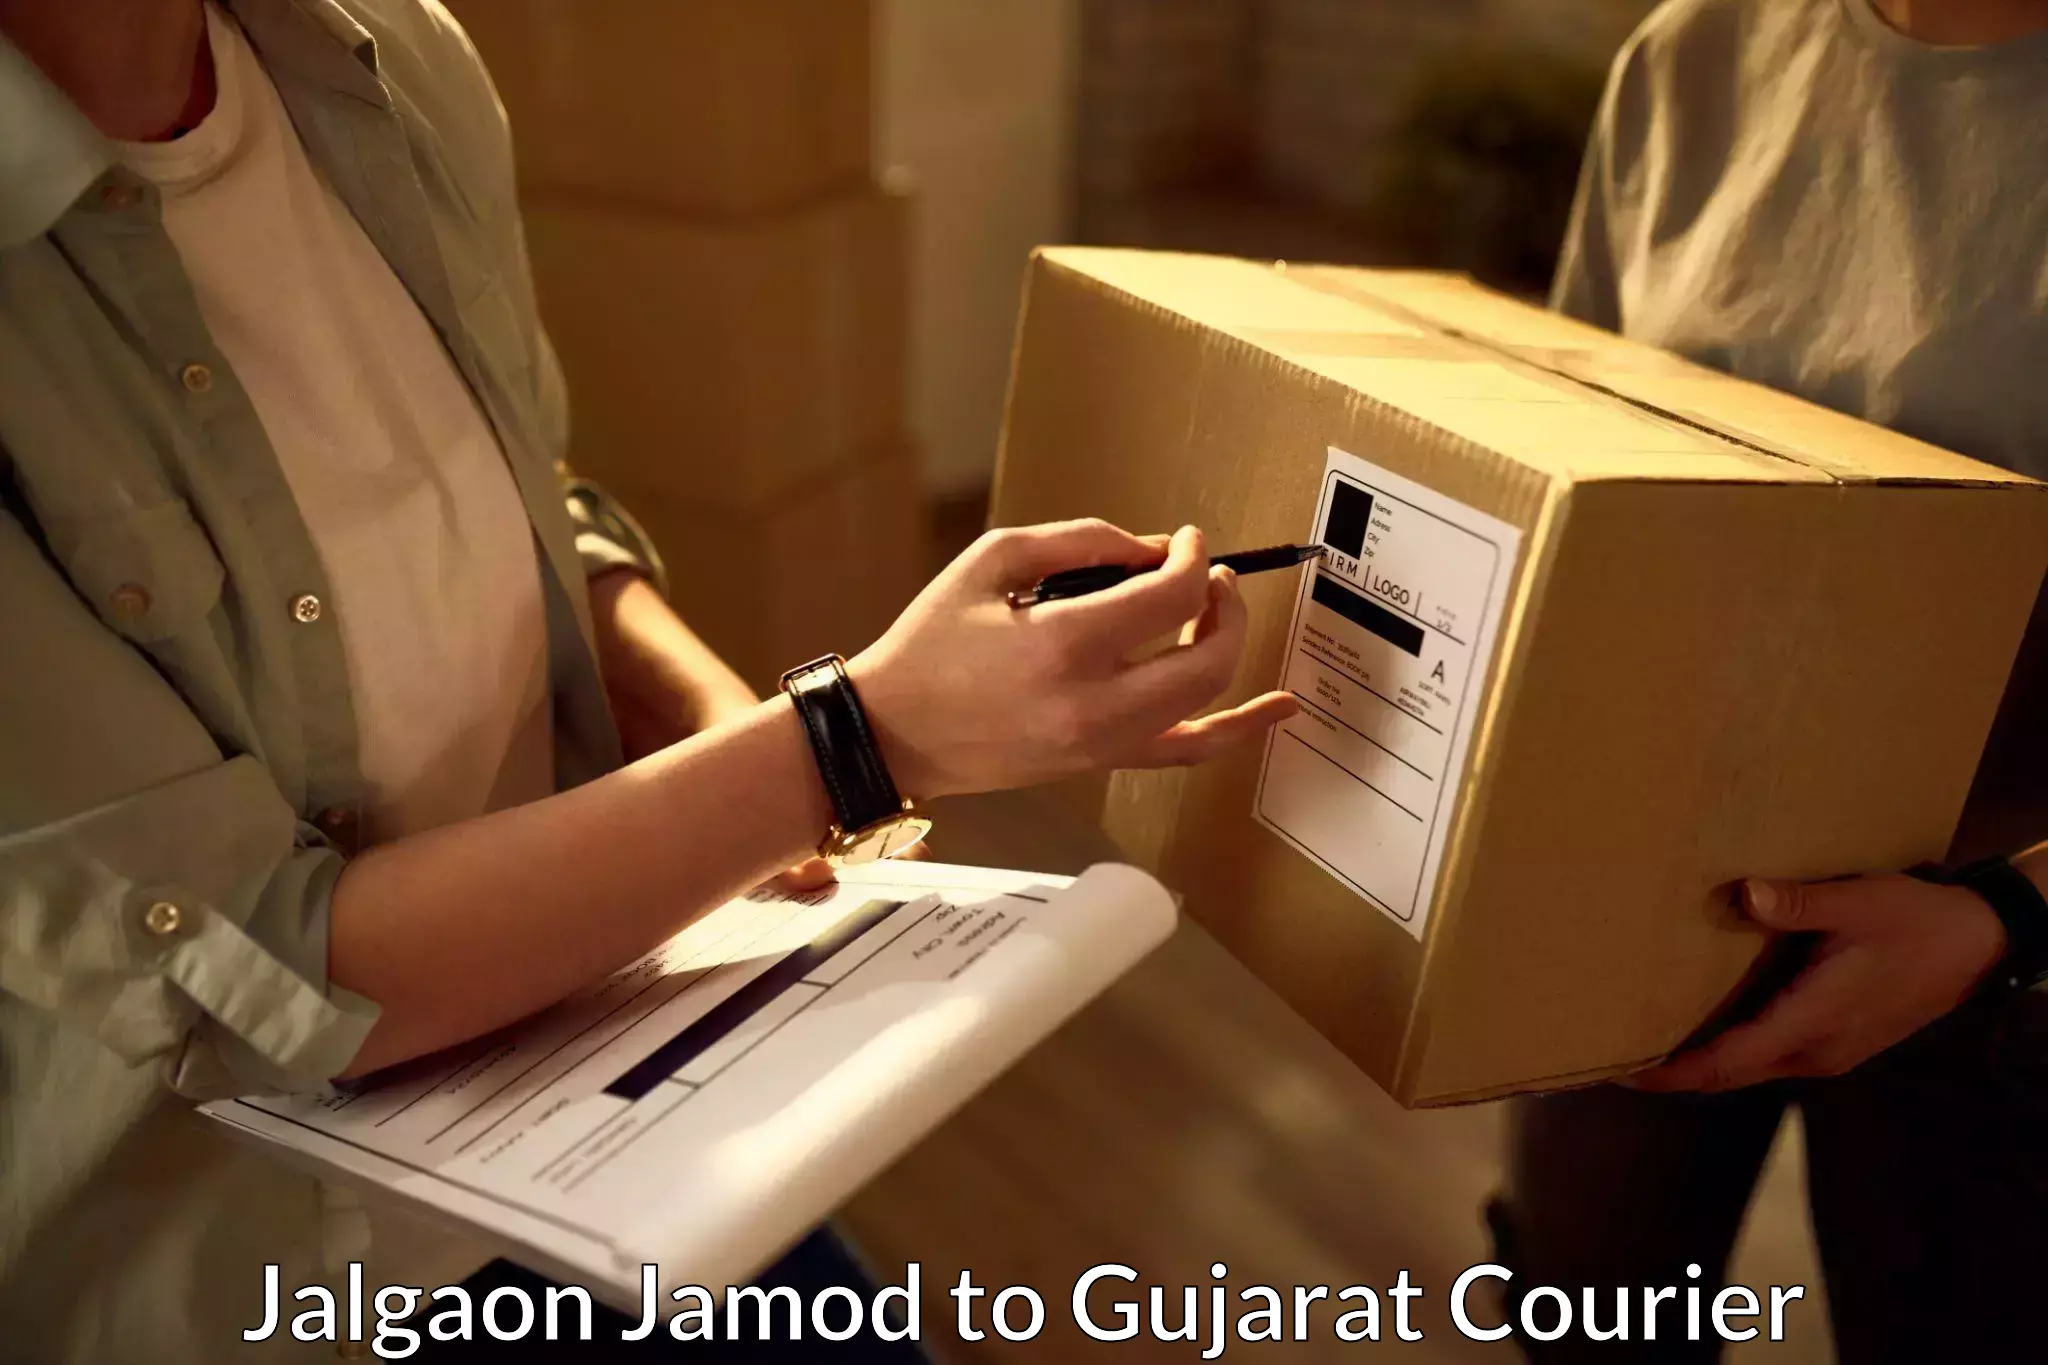 Small business couriers Jalgaon Jamod to Dahegam